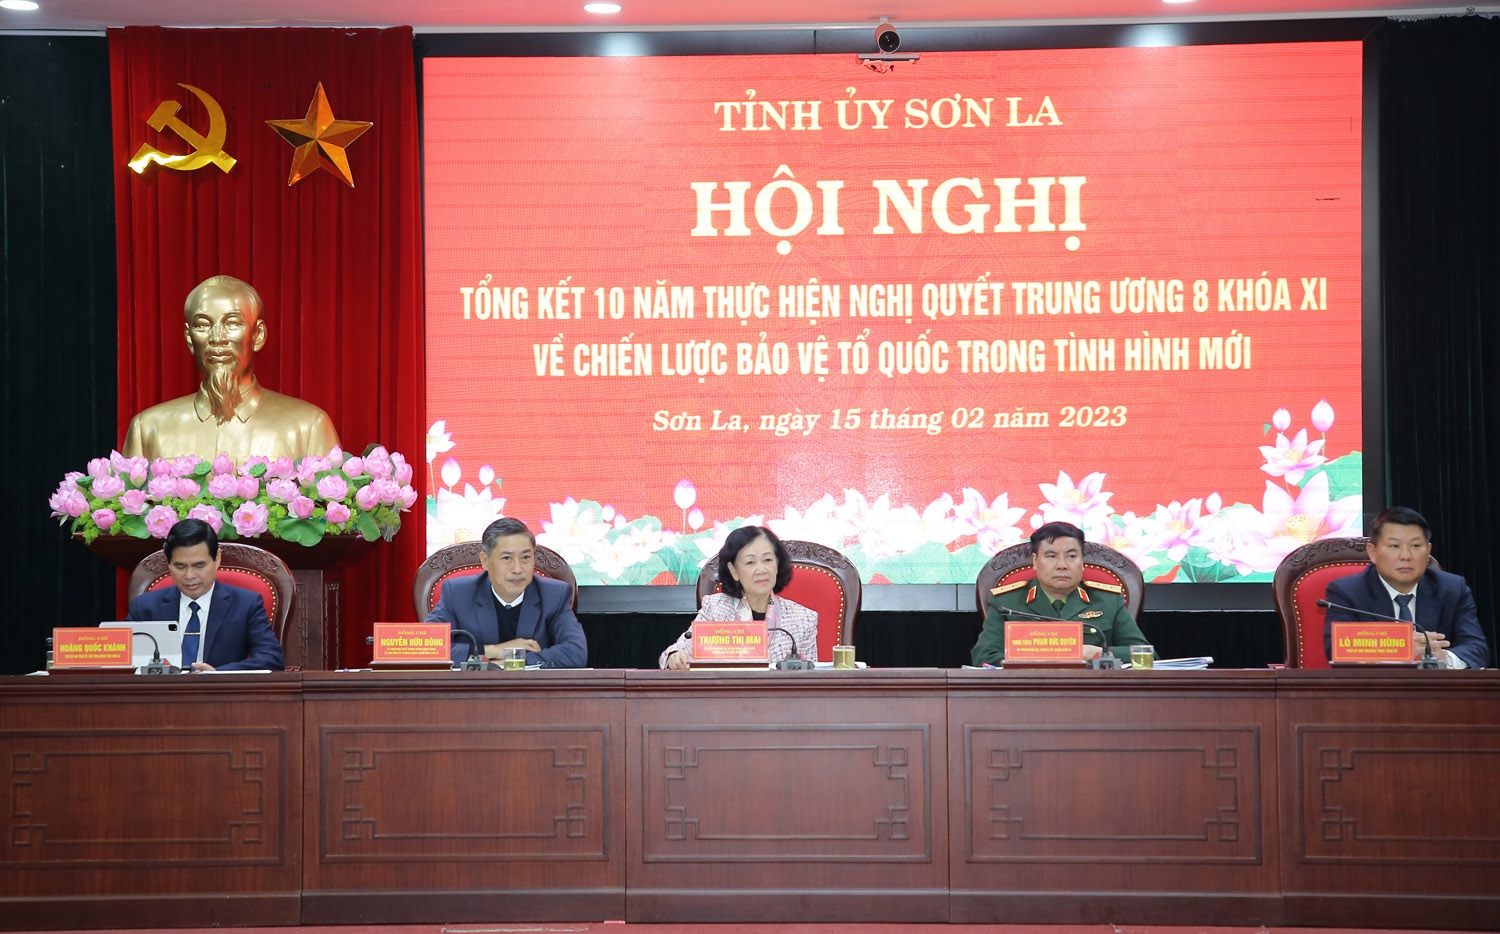 Ủy viên Bộ Chính trị, Bí thư Trung ương Đảng, Trưởng Ban Tổ chức Trung ương Trương Thị Mai dự và chỉ đạo Hội nghị tổng kết 10 năm thực hiện Nghị quyết Trung ương 8 khóa XI